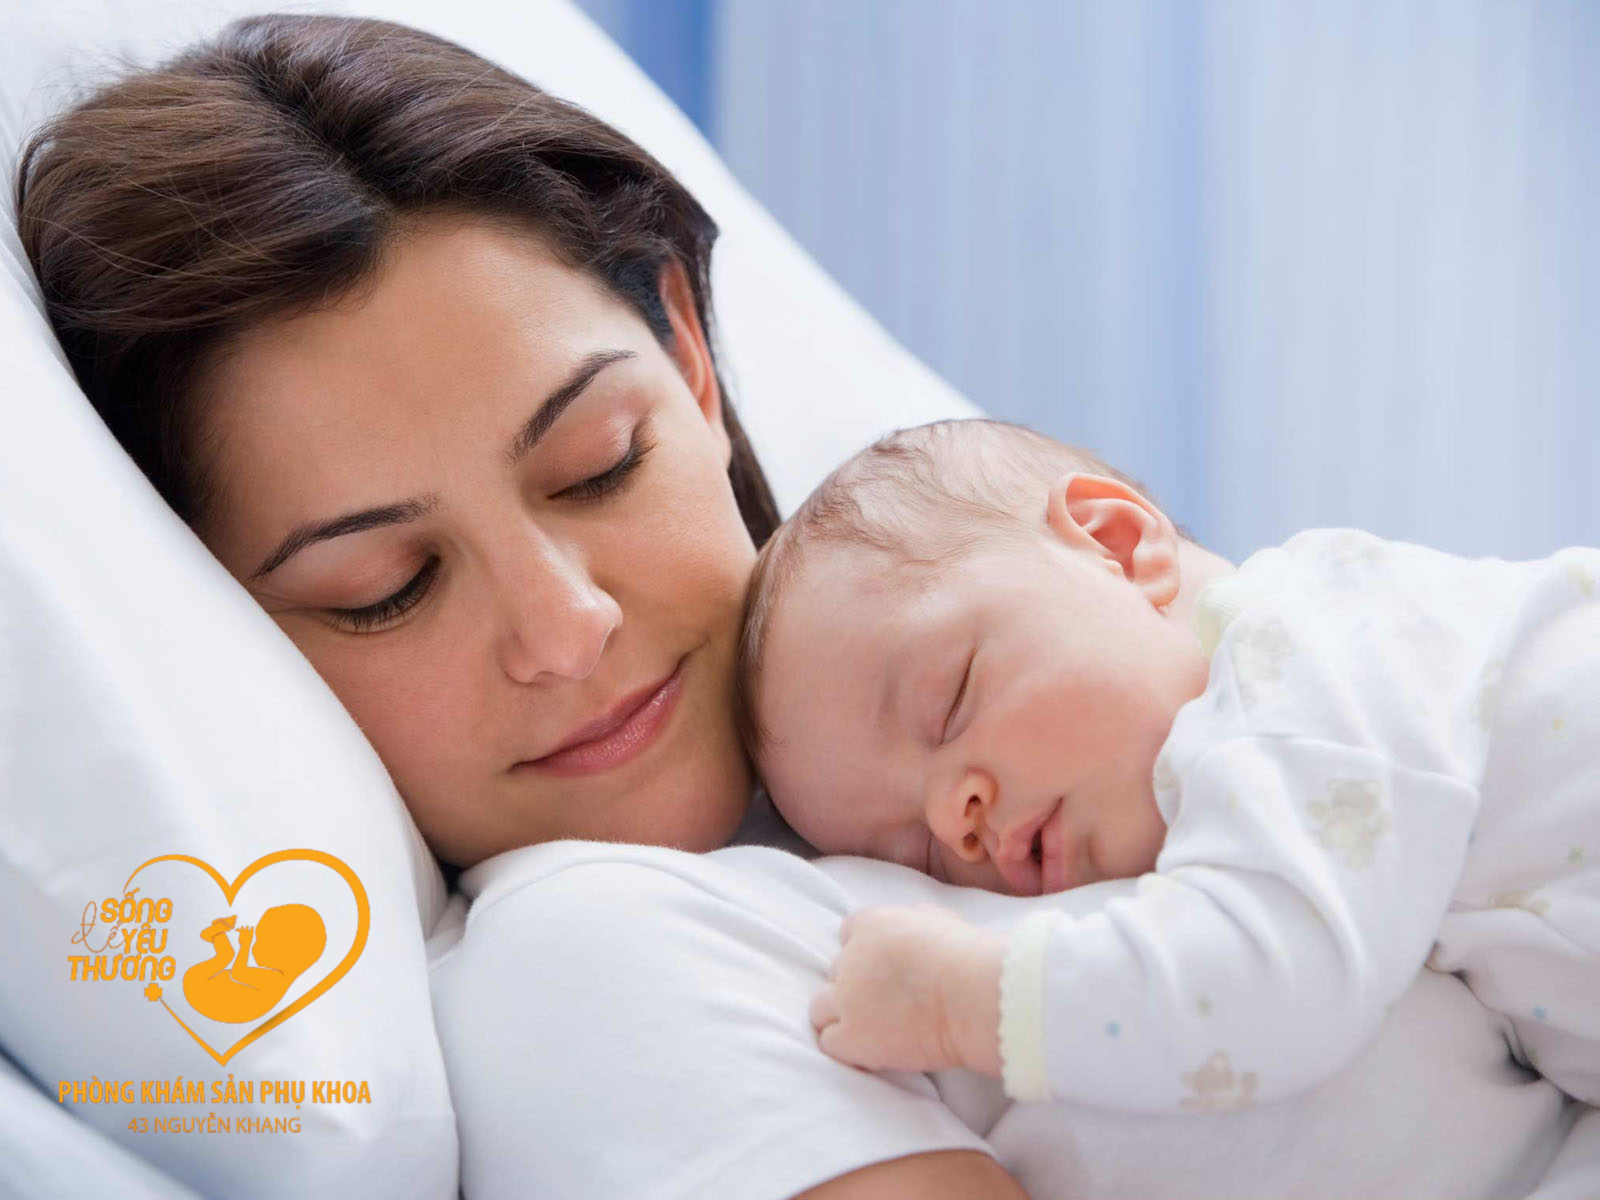 thể dục an toàn sau sinh còn giúp các mẹ thư giãn 